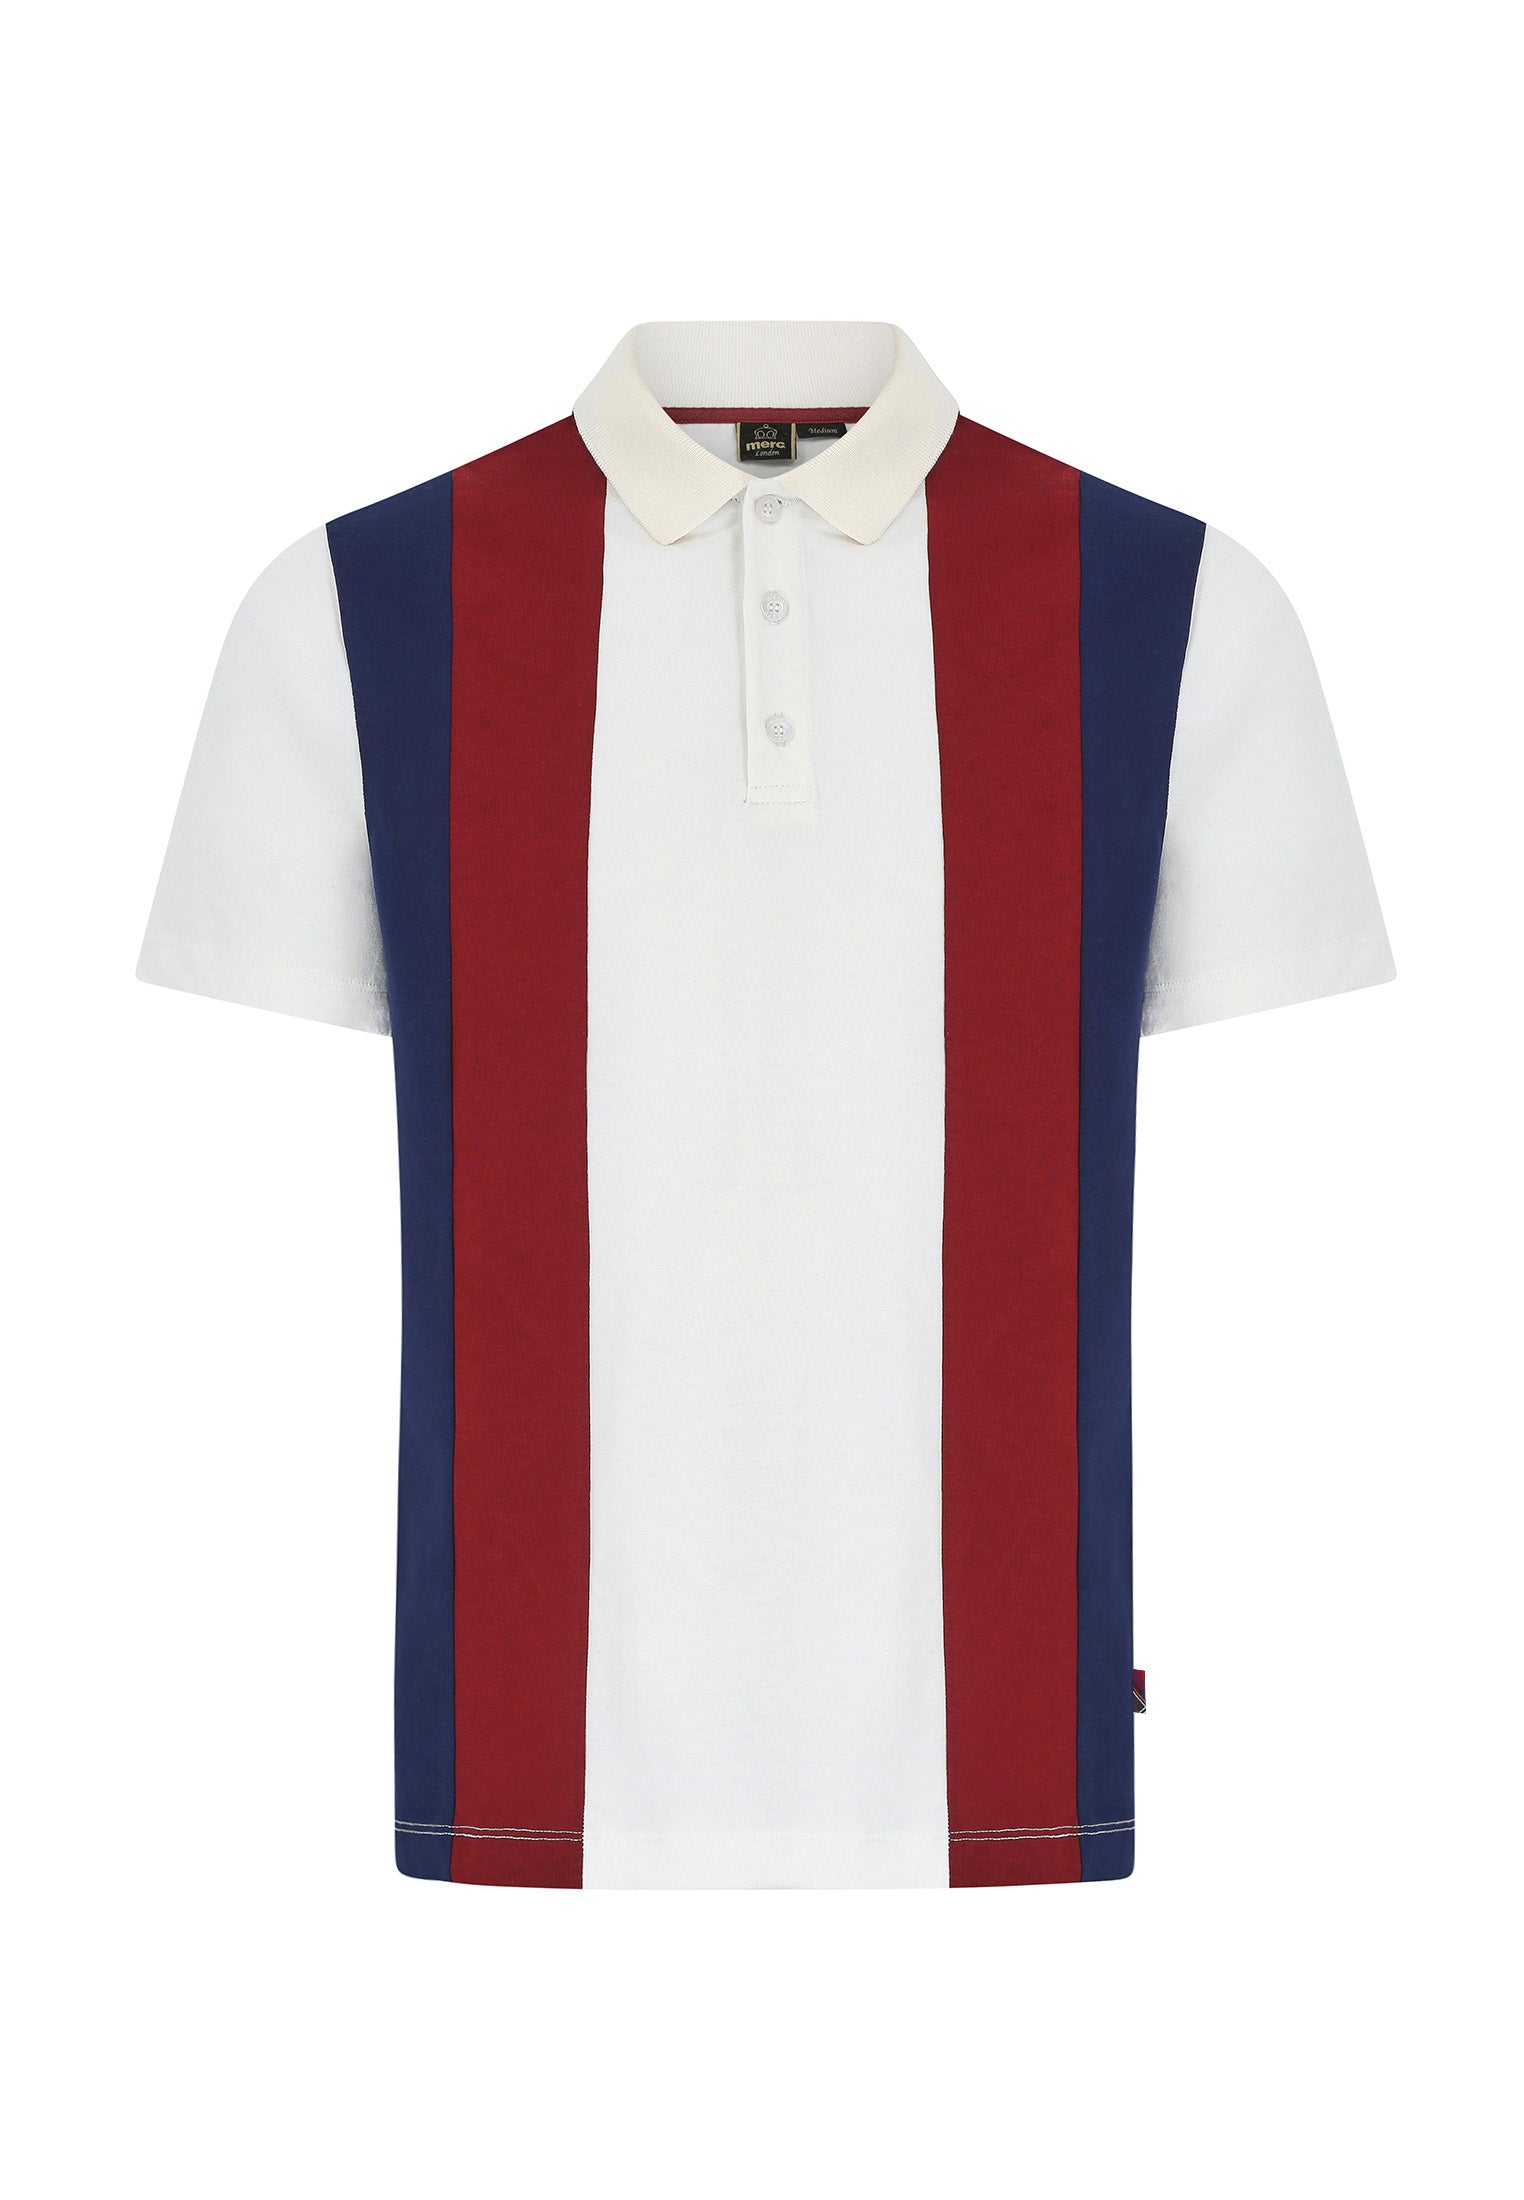 Bidwell Vertical Bold Stripes Mens Polo Shirt in Dark Brown